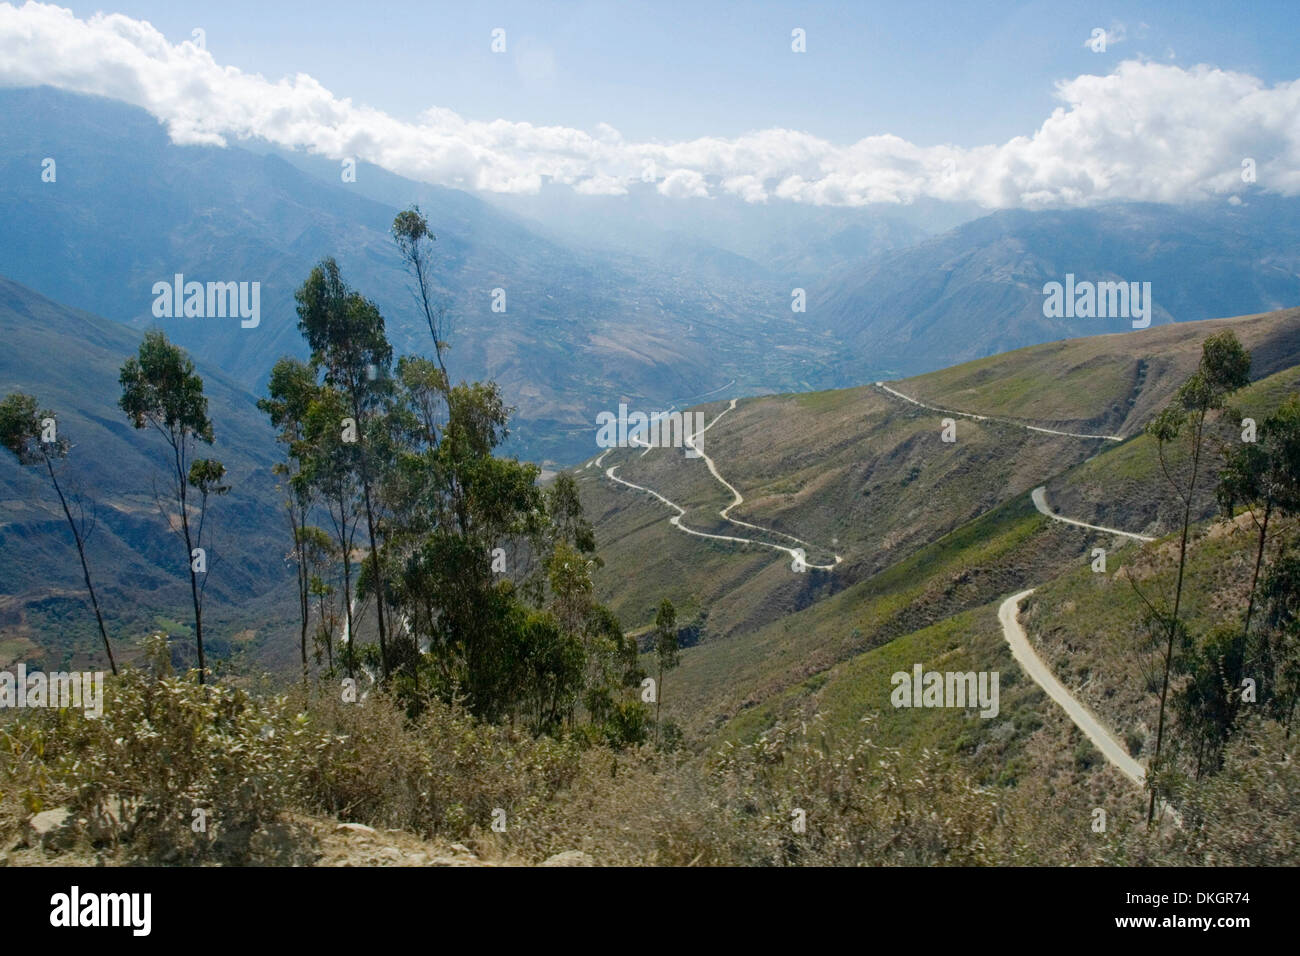 Hohe schmale kurvenreiche Straße durch die Anden in Peru mit Schnee bedeckt Gipfeln, tiefen Tälern und kargen Hügeln überragt Stockfoto